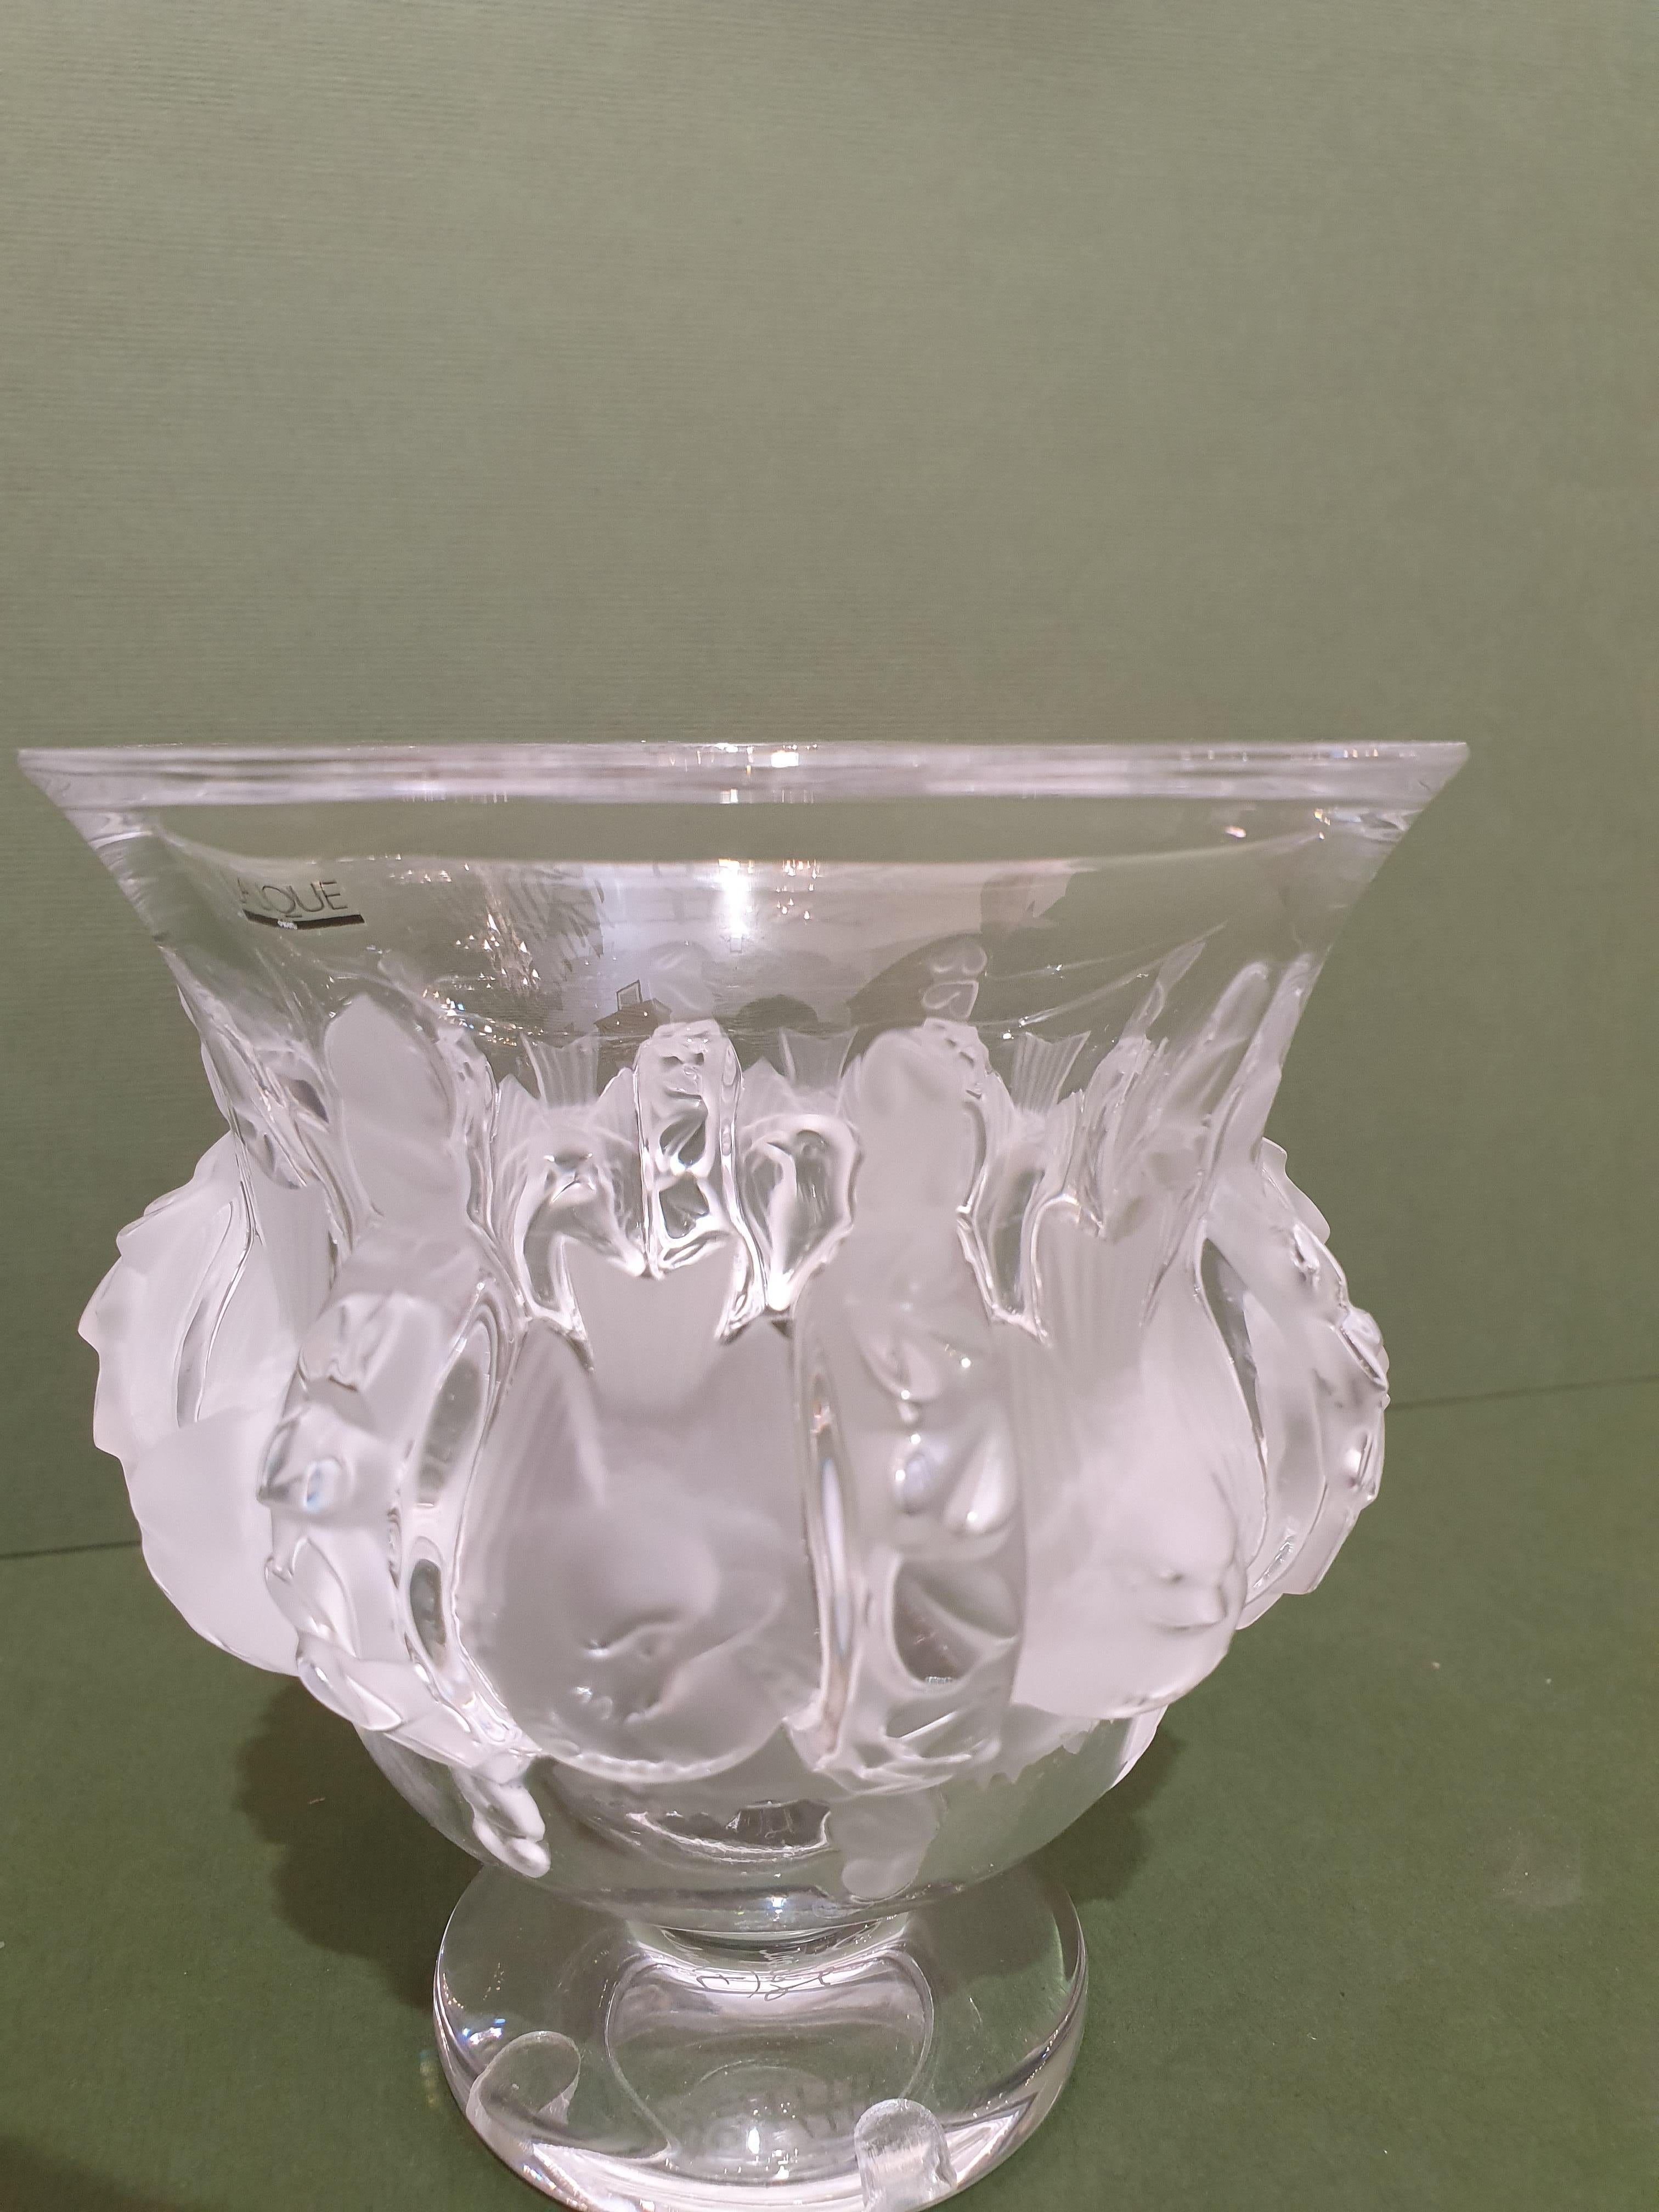 Conçu en 1948 par Marc Lalique, ce vase est décoré d'oiseaux sculptés en cristal satiné. A travers ce vase, Lalique rend hommage à deux thèmes chers à René Lalique, la Faune et la Flore. Cette pièce nous emmène dans un état de nature onirique,